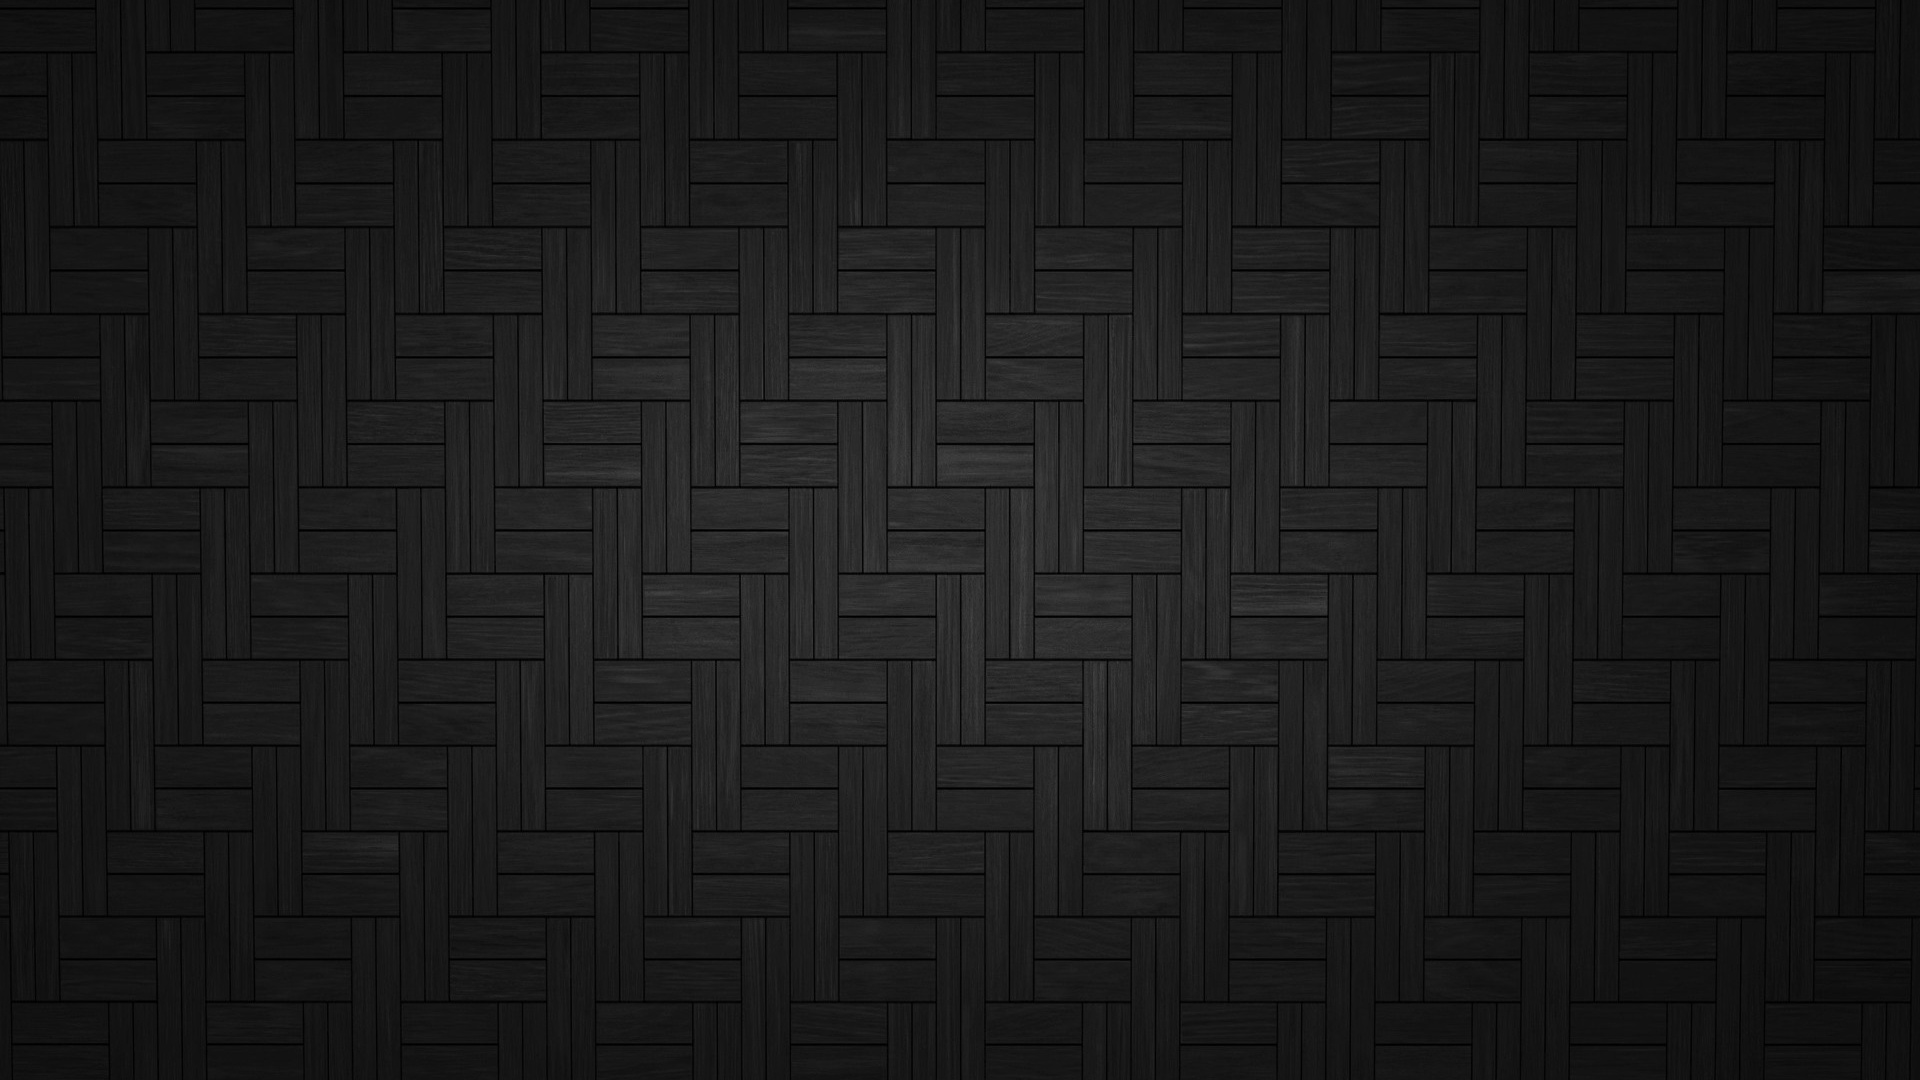 Dark Wood Tiles Desktop Pc And Mac Wallpaper